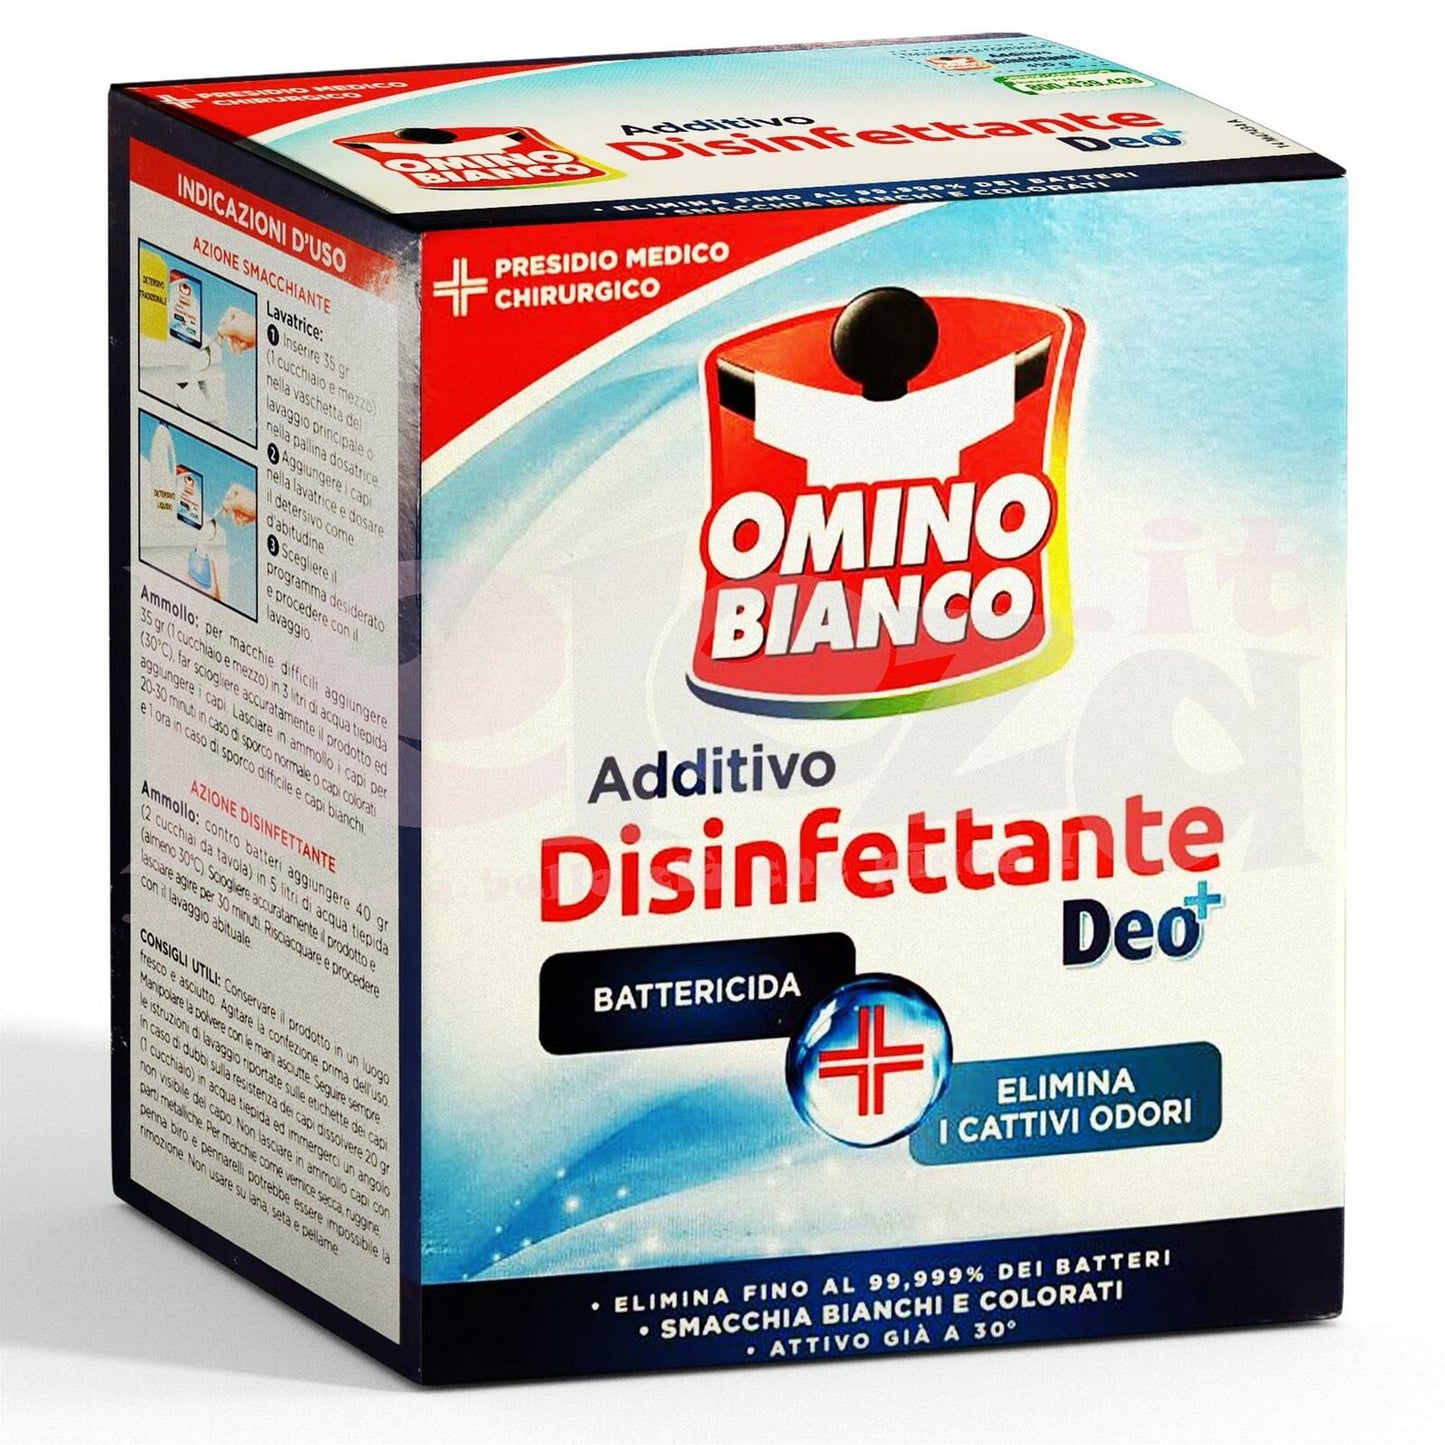 OMINO BIANCO ADDITIVO DISINFETTANTE DEO+ 450GR